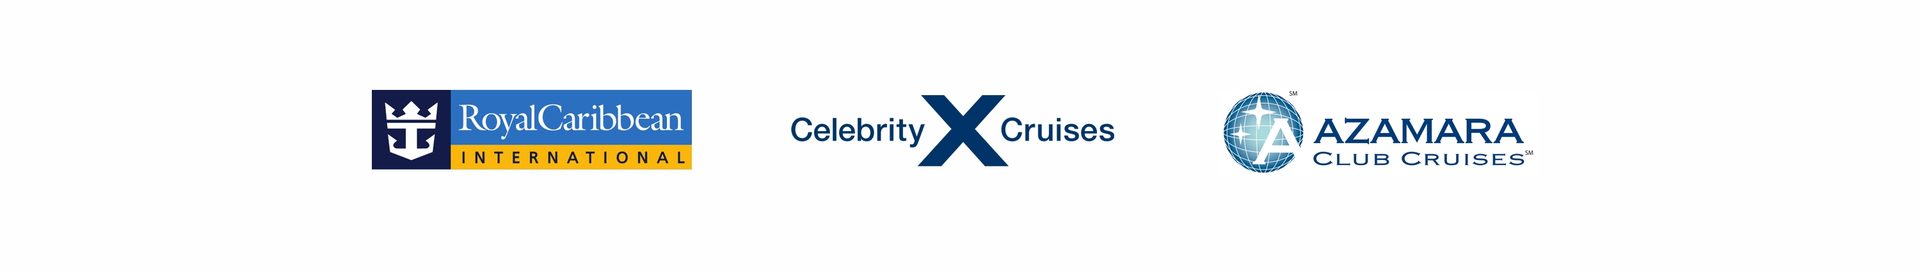 Royal Caribbean Cruises Ltd. ustanovila novú štruktúru preferovaných obchodných zástupcov v ČR a SR